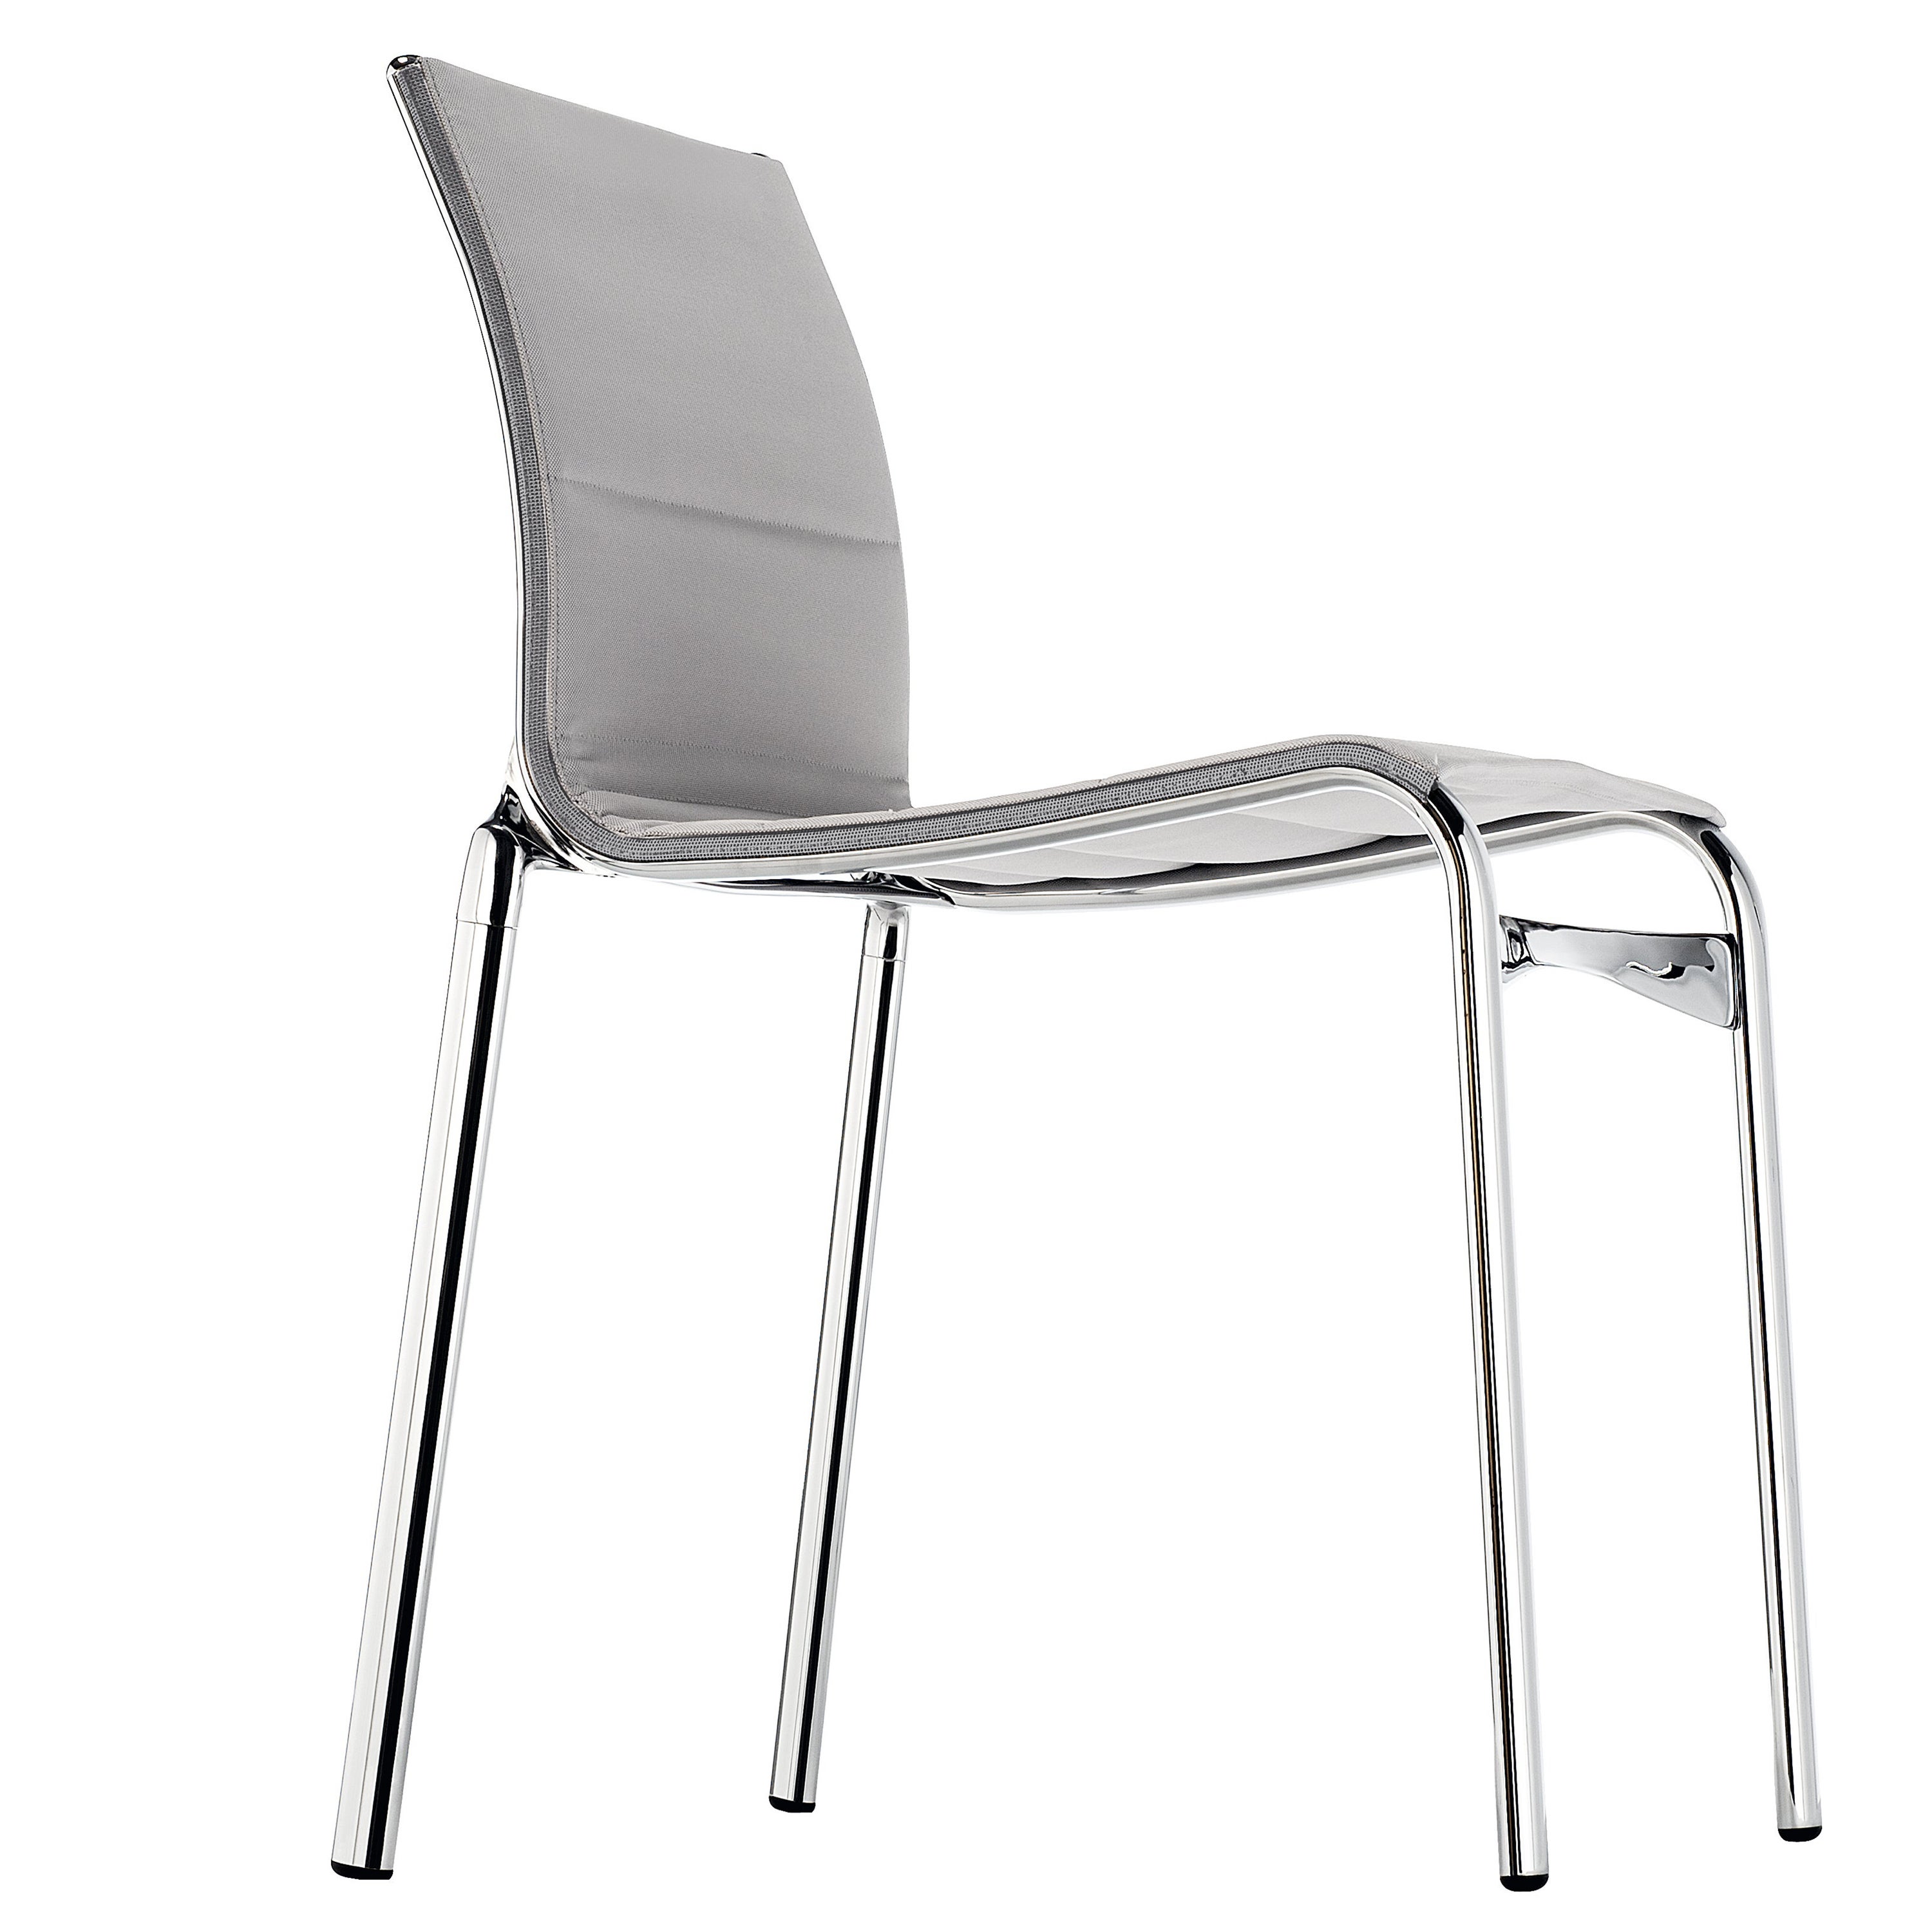 Chaise haute Alias 40 avec cadre en aluminium chromé et assise tapissée grise